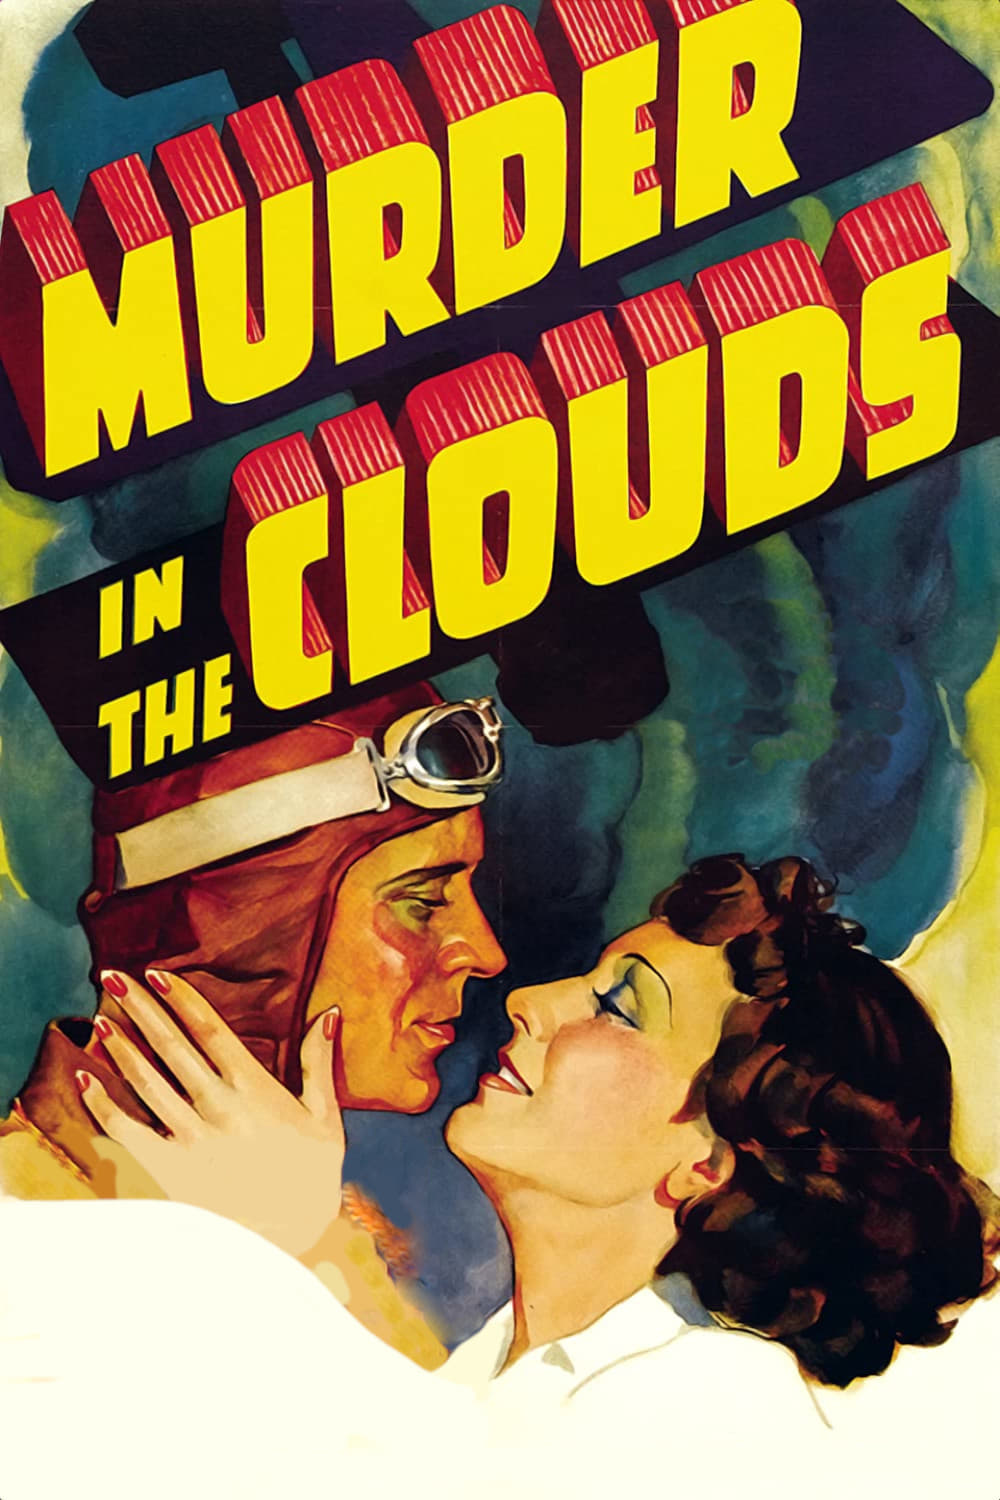 Murder in the Clouds (1934)